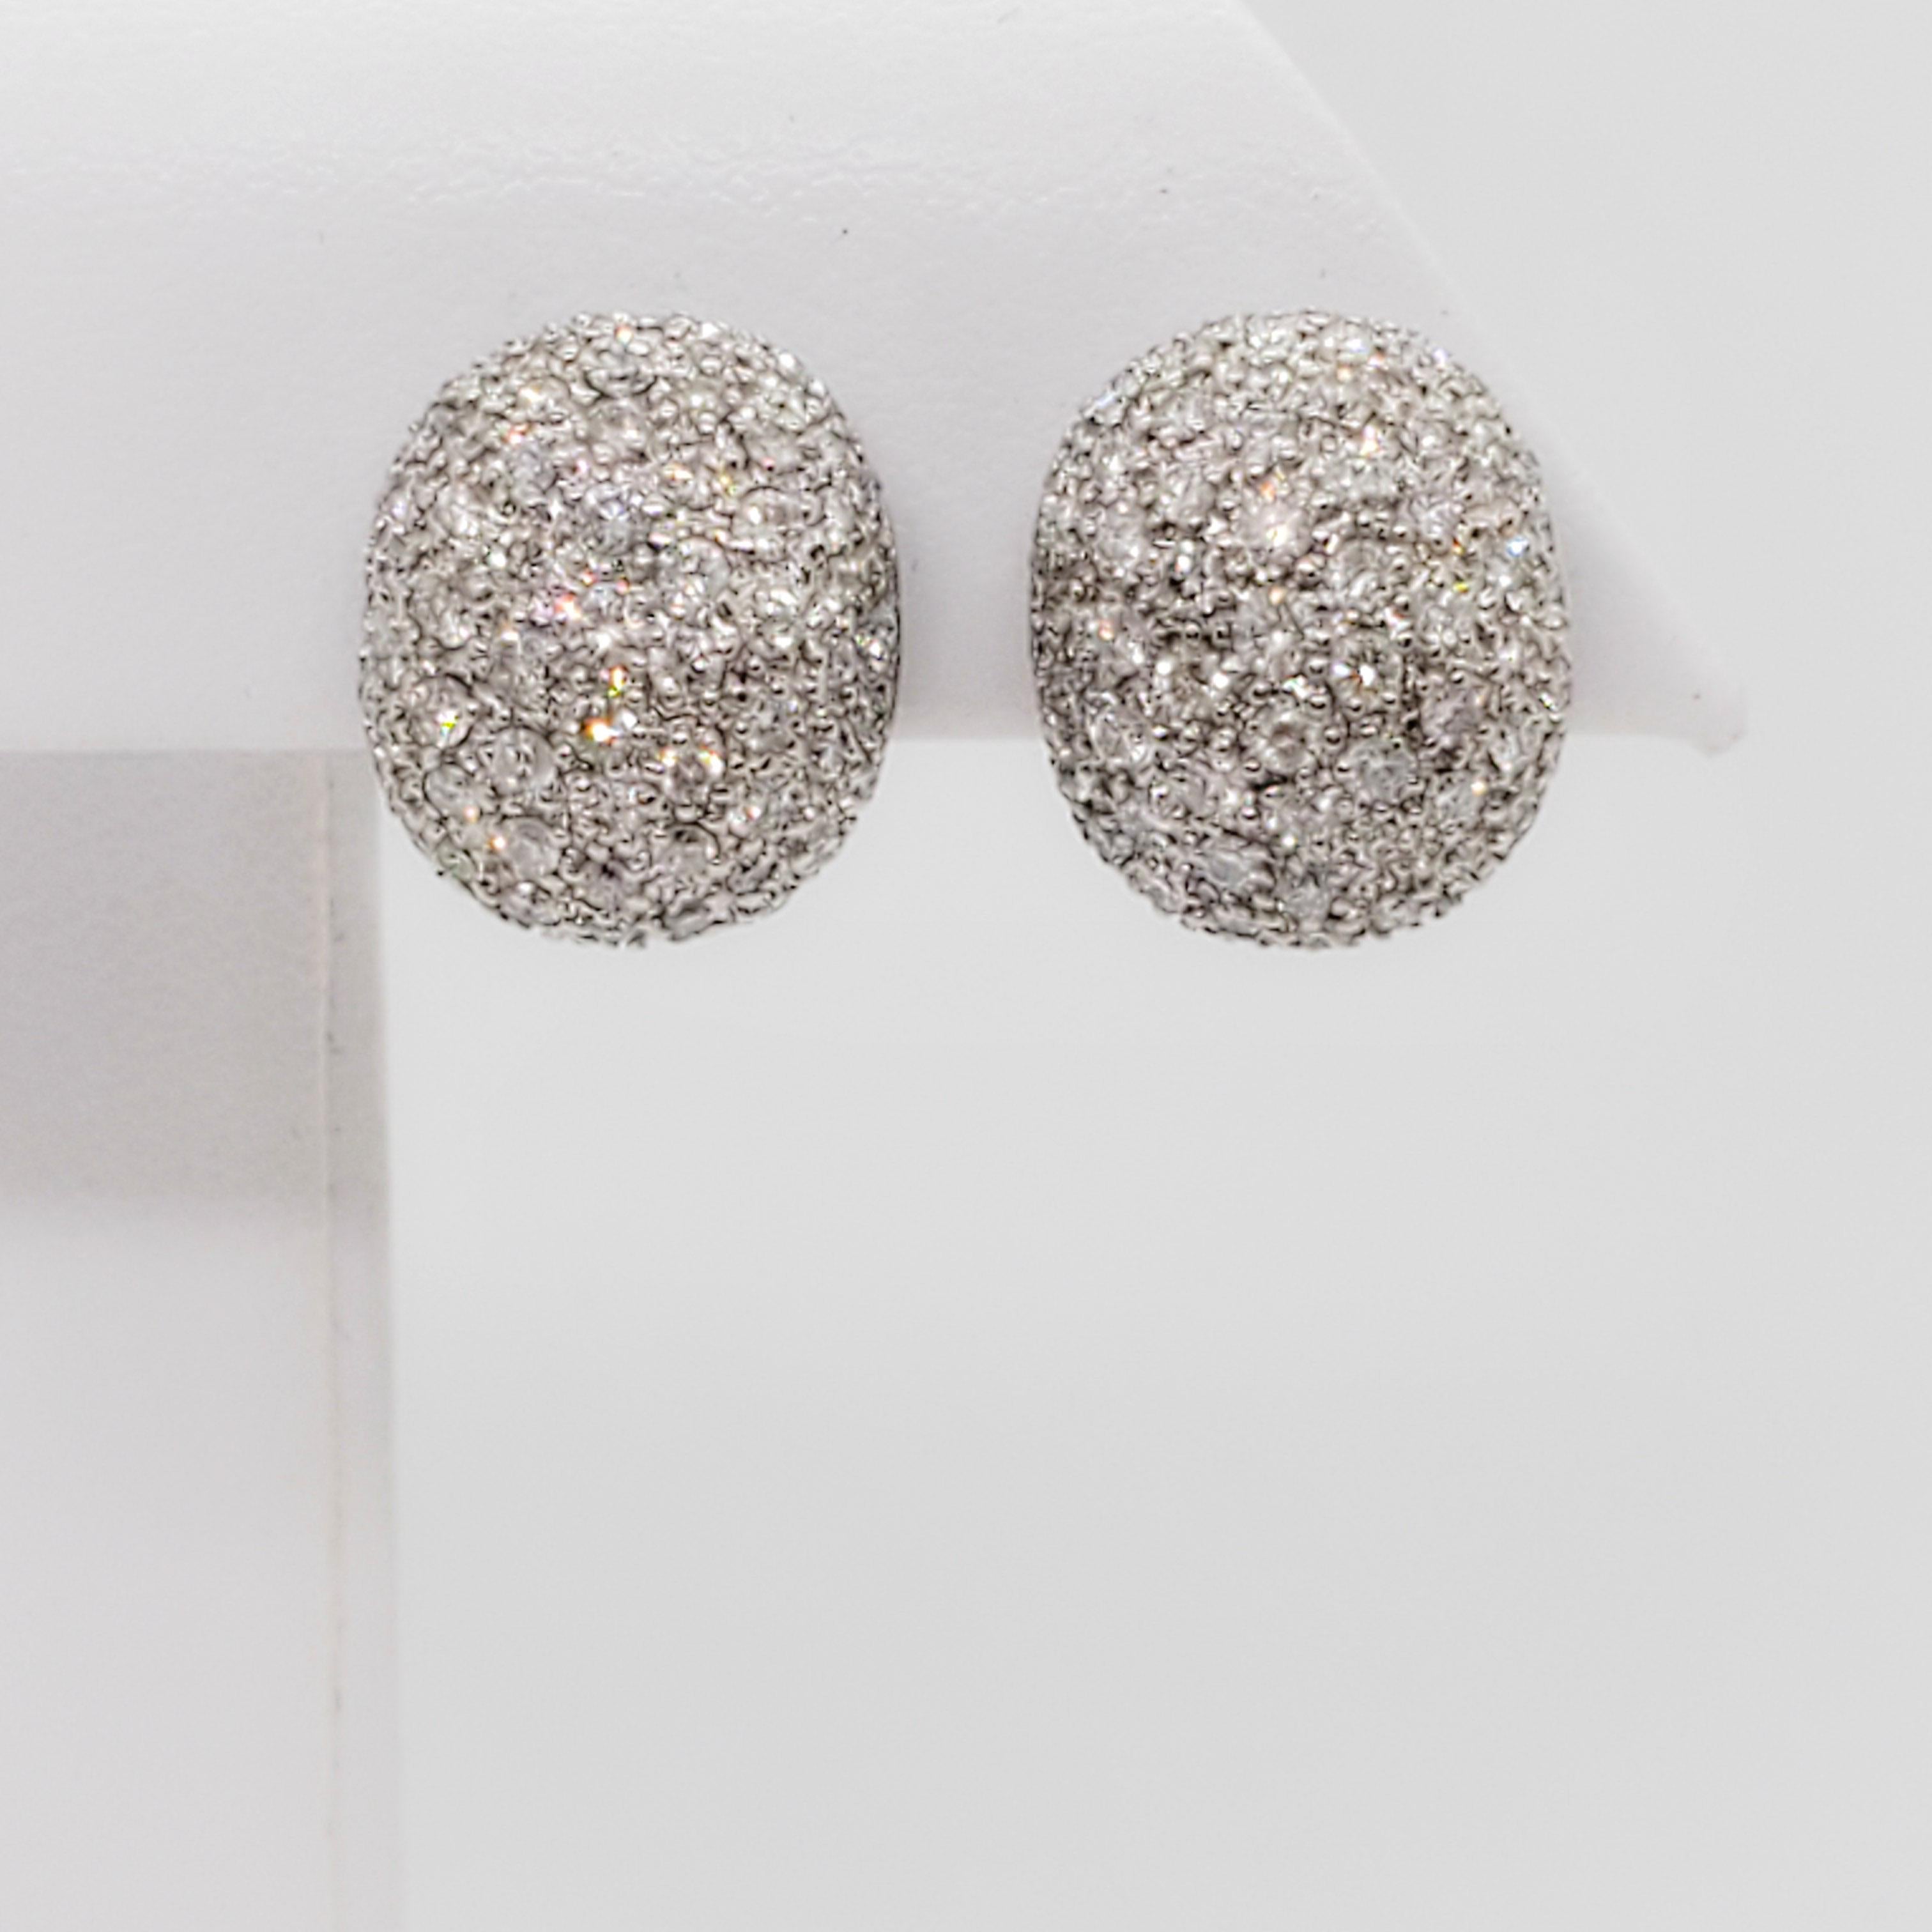 Wunderschöne weiße Diamant-Ohrringe mit 1,95 ct. von guter Qualität, weiß und hellen runden Diamanten. Handgefertigte Fassungen aus 18 Karat Weißgold.